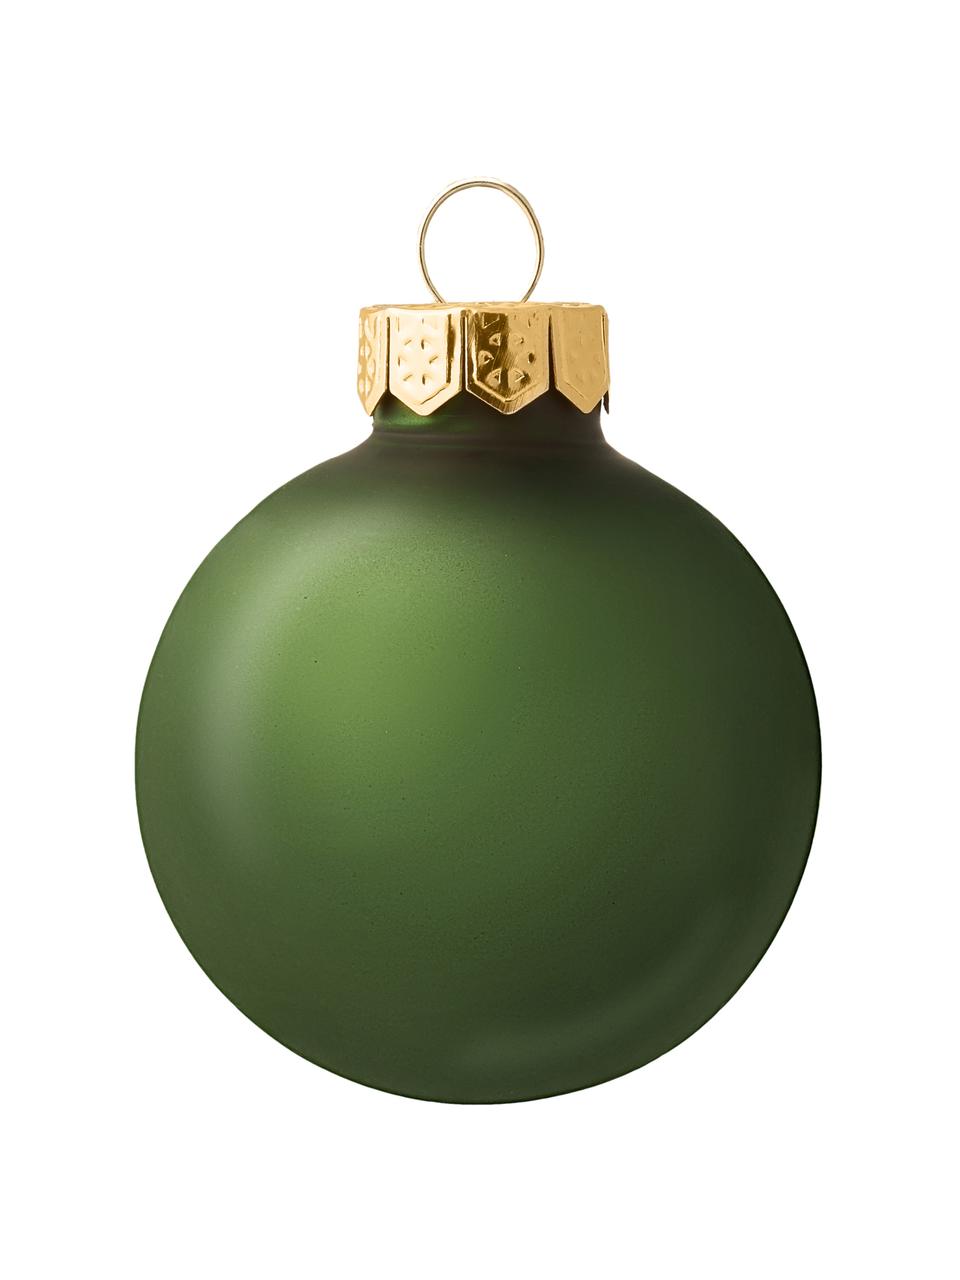 Set palline di Natale Evergreen, Verde, Ø 8 cm, 6 pz